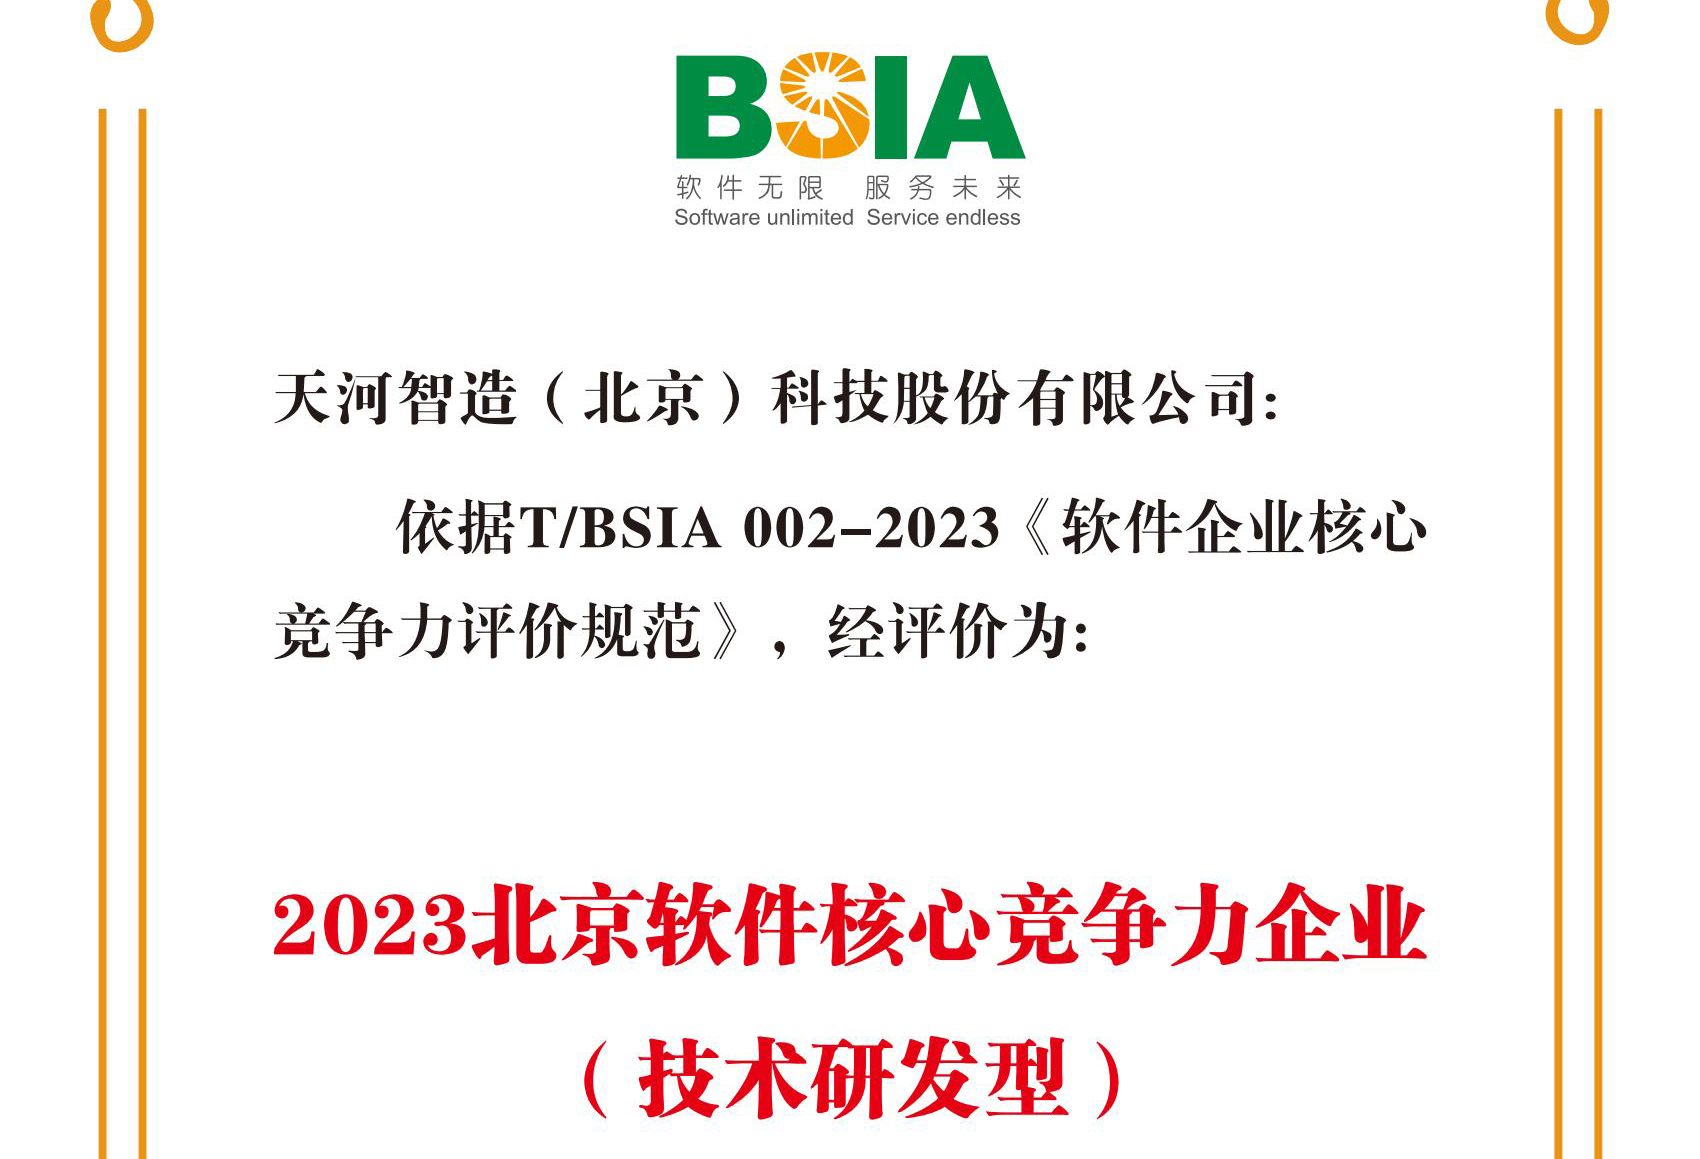 天河软件上榜BSIA“2023年软件核心竞争力企业名单”